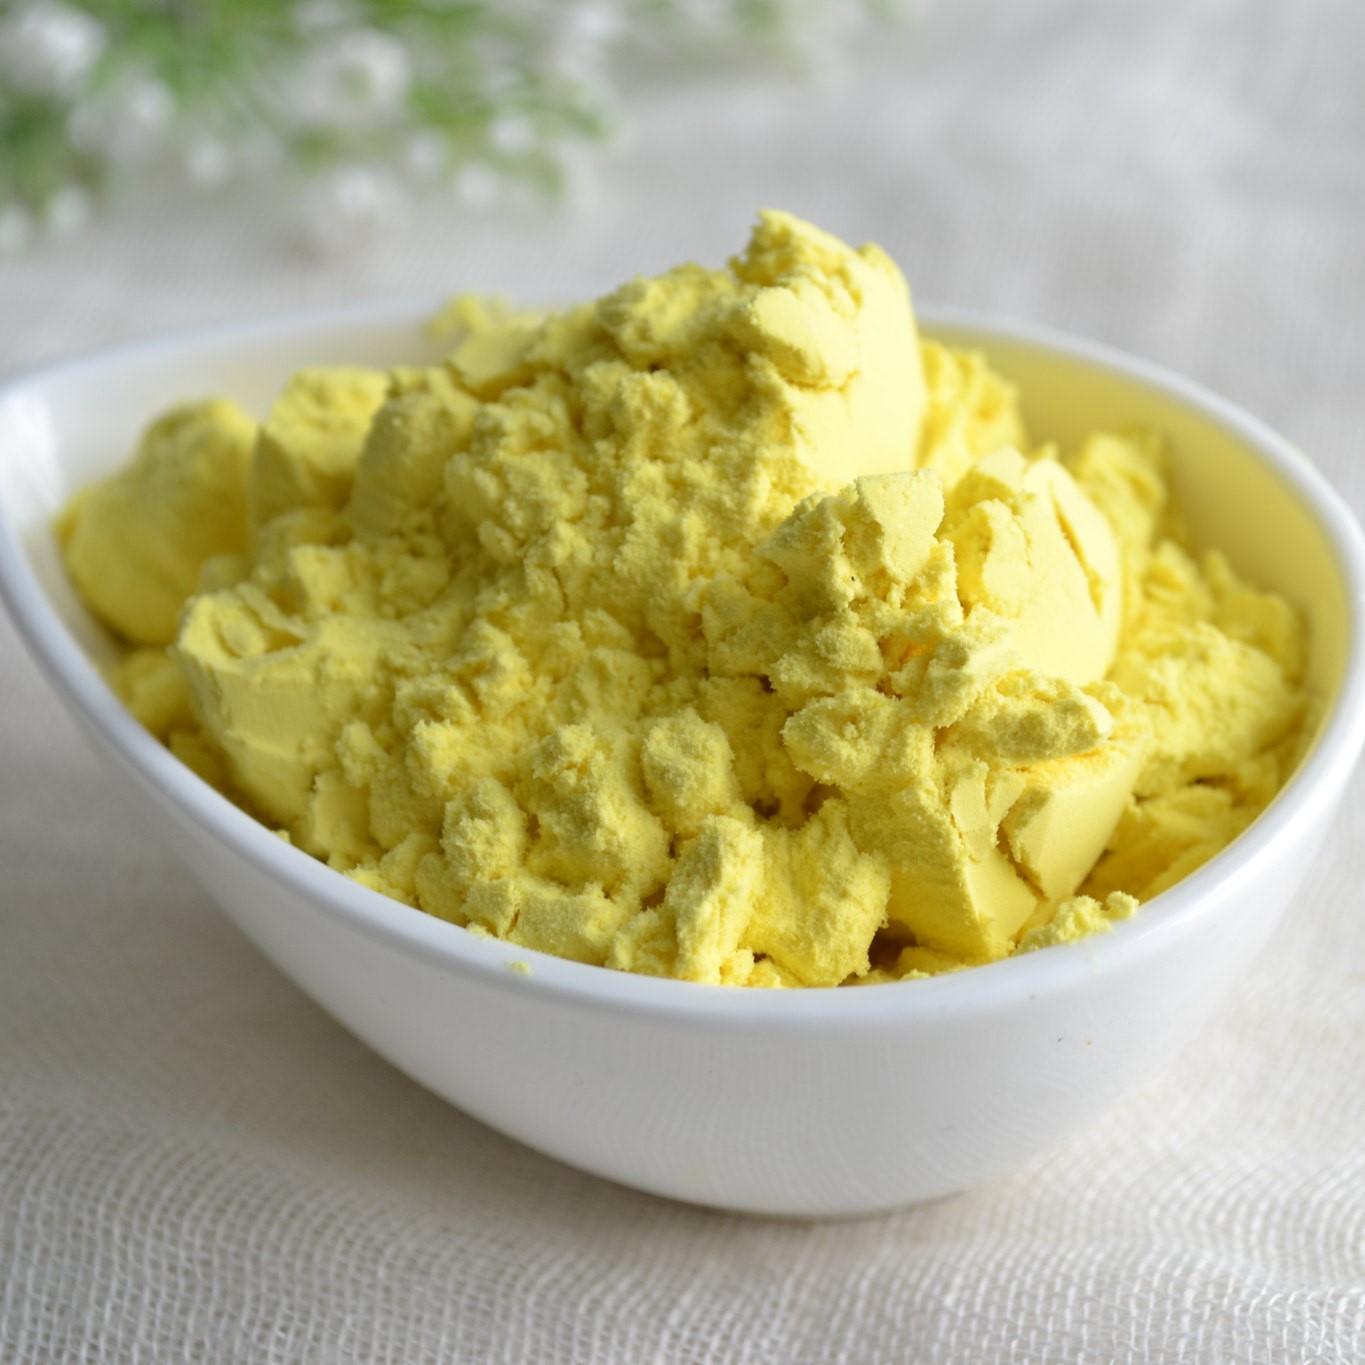 Tinh bột nghệ vàng organic Kentary hũ 250gr - siêu thực phẩm giúp thanh lọc - eat clean